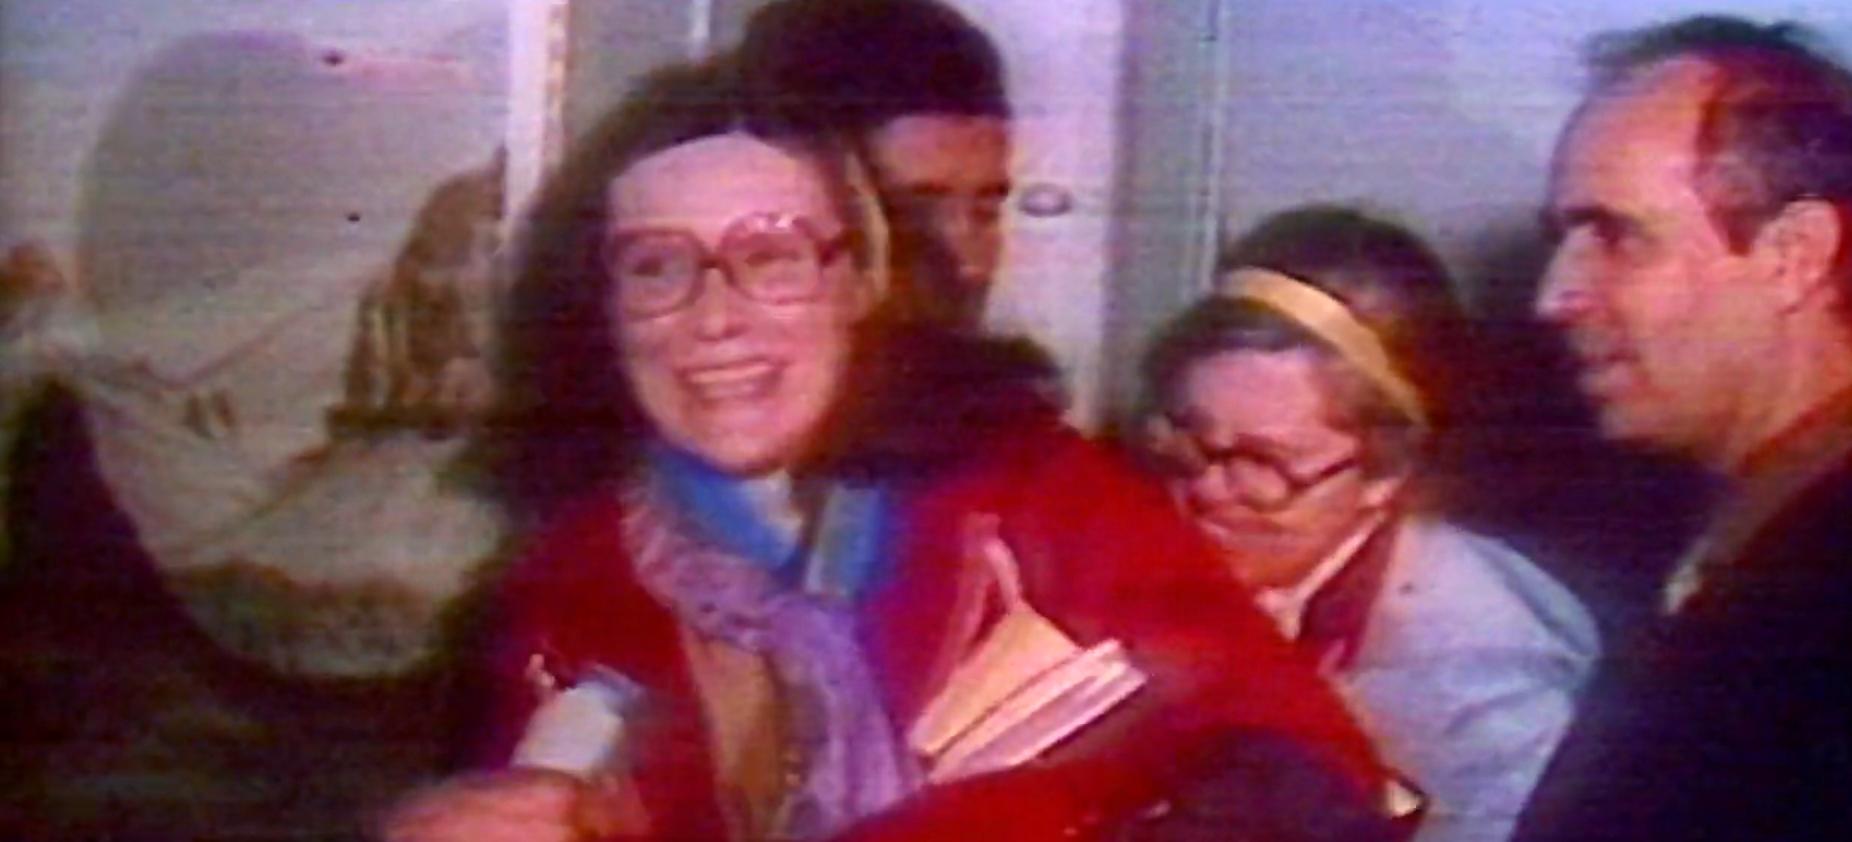 20 janvier 1981, les otages sont libérés, après 444 jours de détention. [Climage]